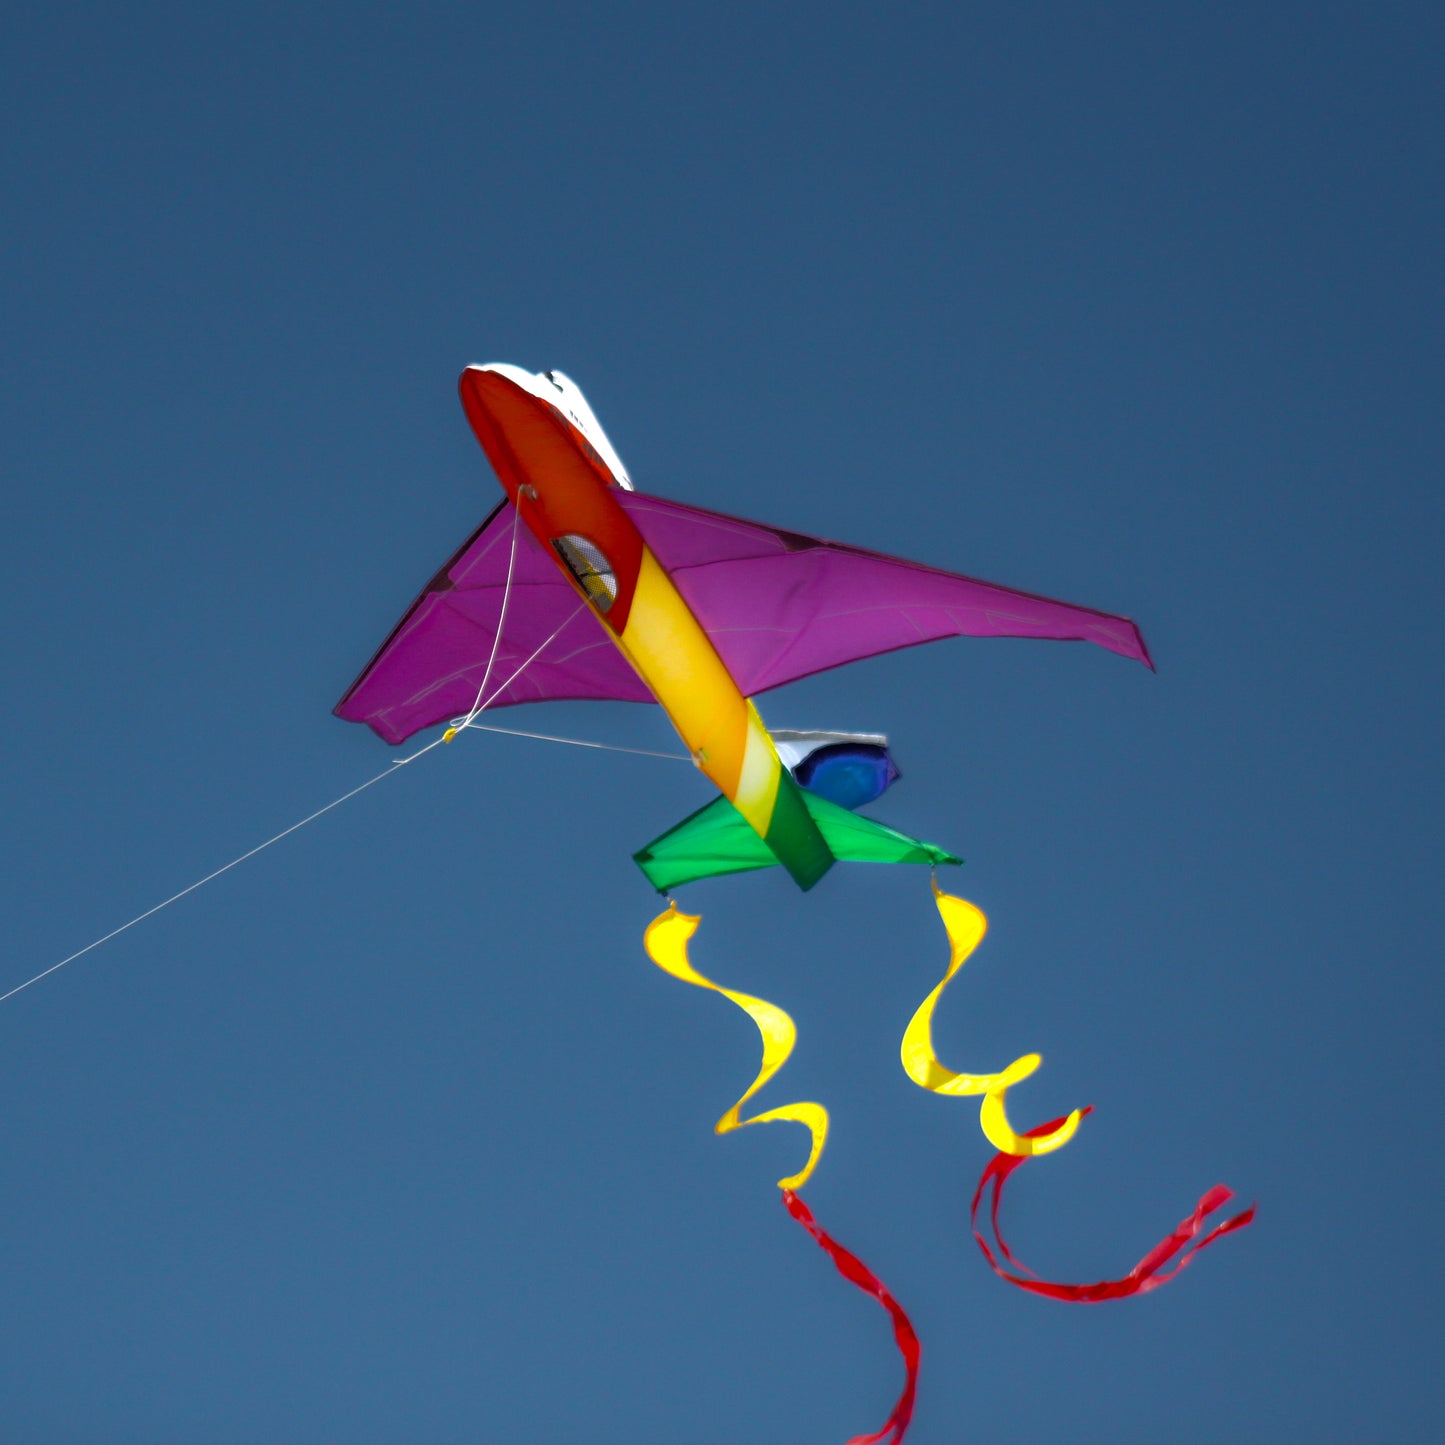 X Kites Jumbo Jet 3D Kite In Flight